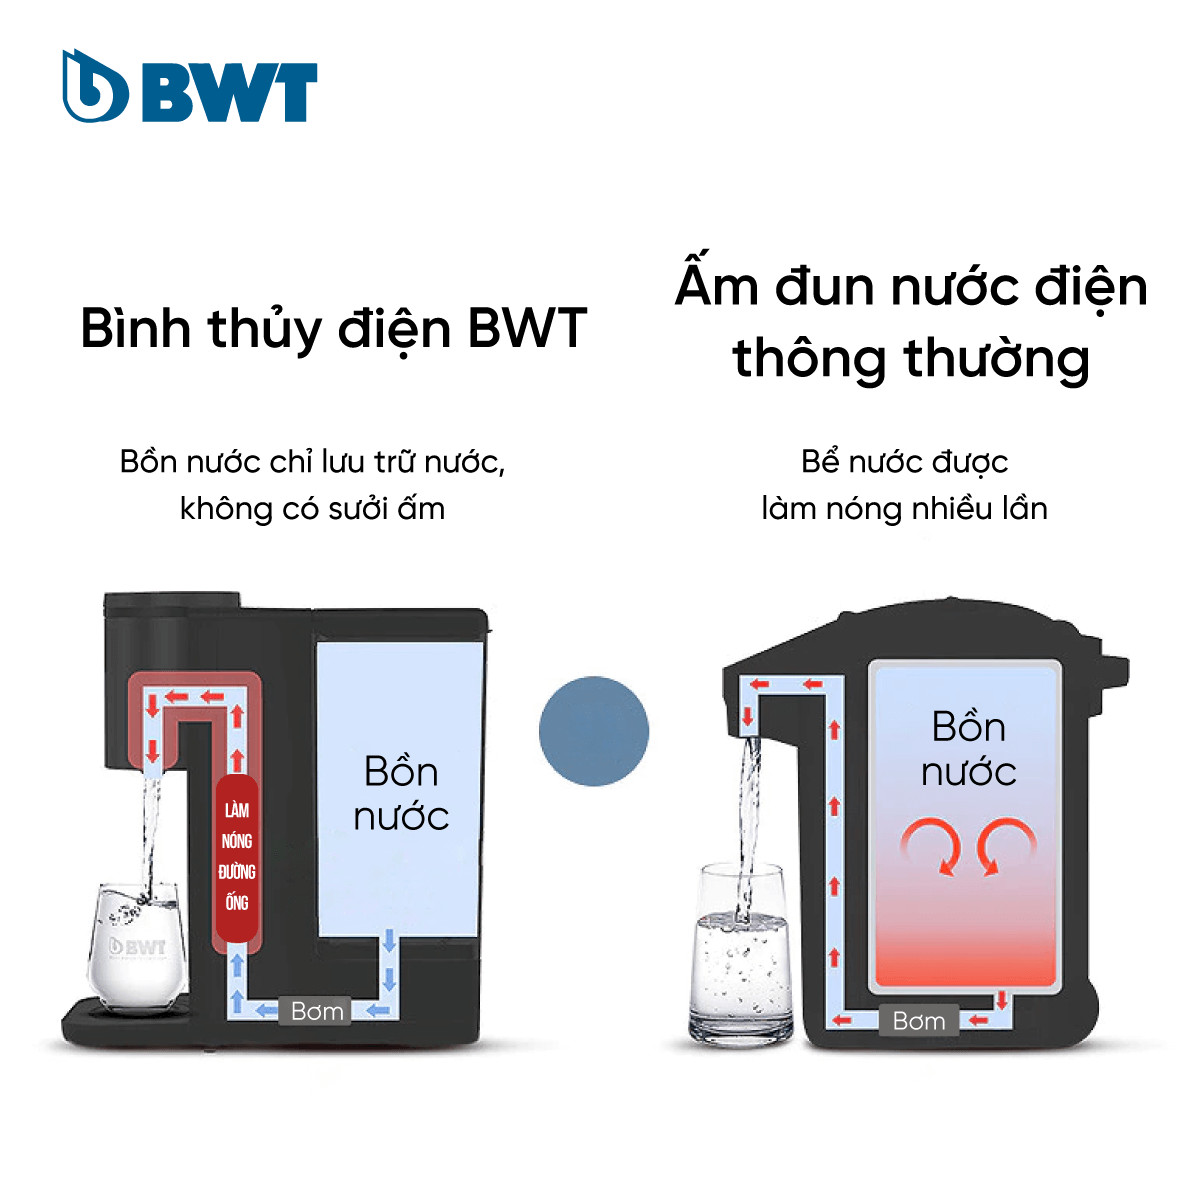 Bình thủy điện BWT KT2220 phù hợp với nguồn nước tại Việt Nam 